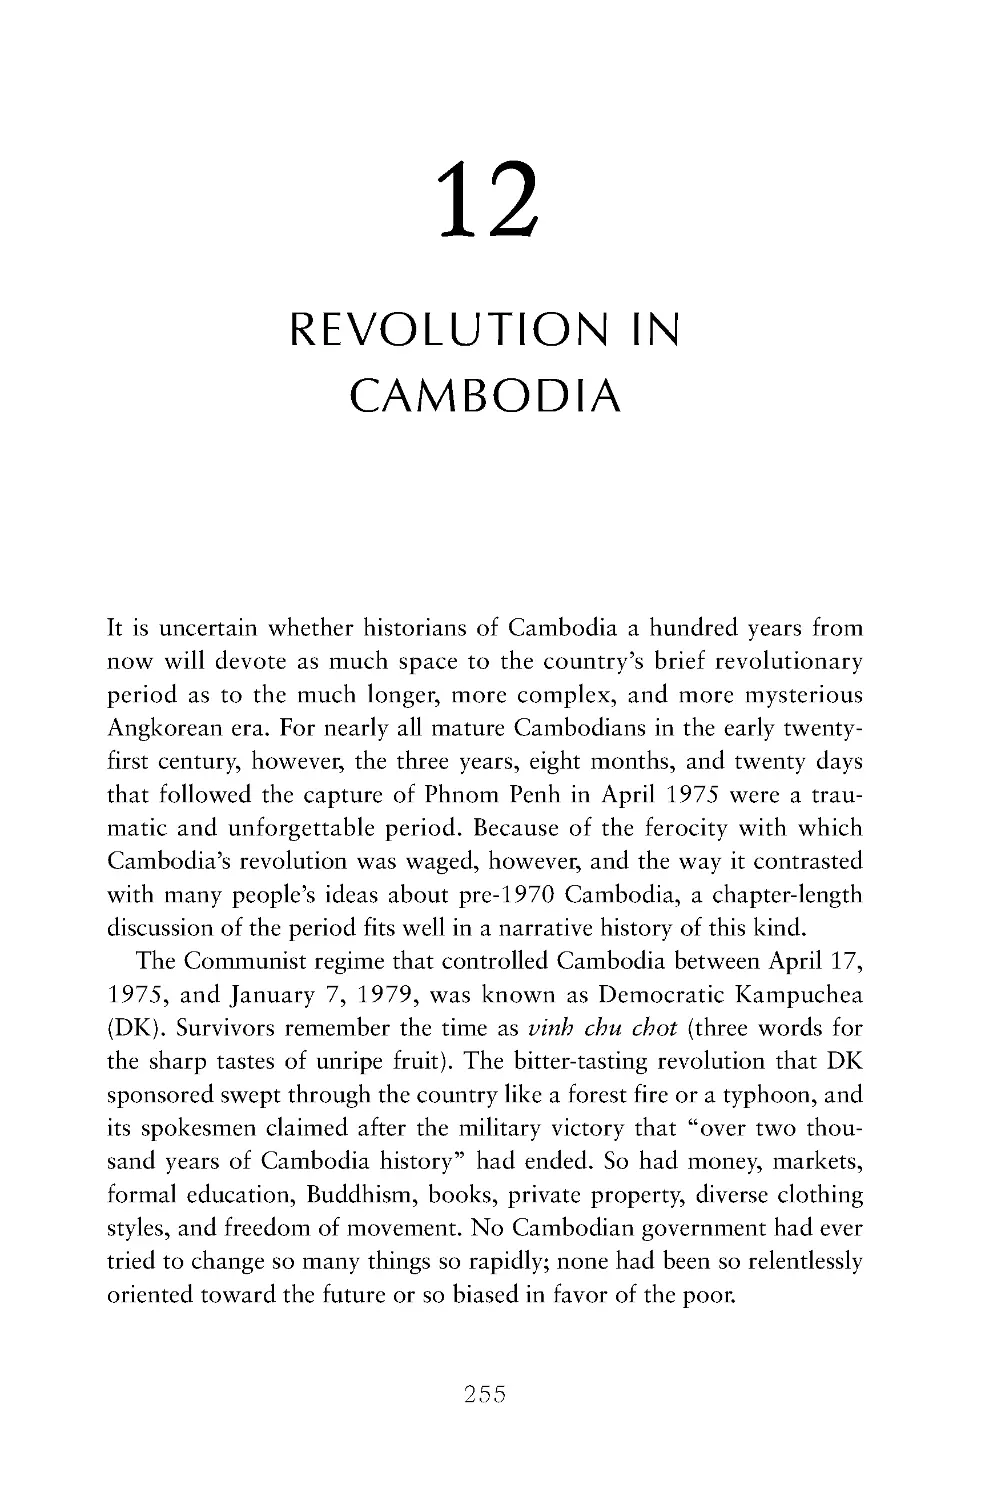 12. Revolution in Cambodia